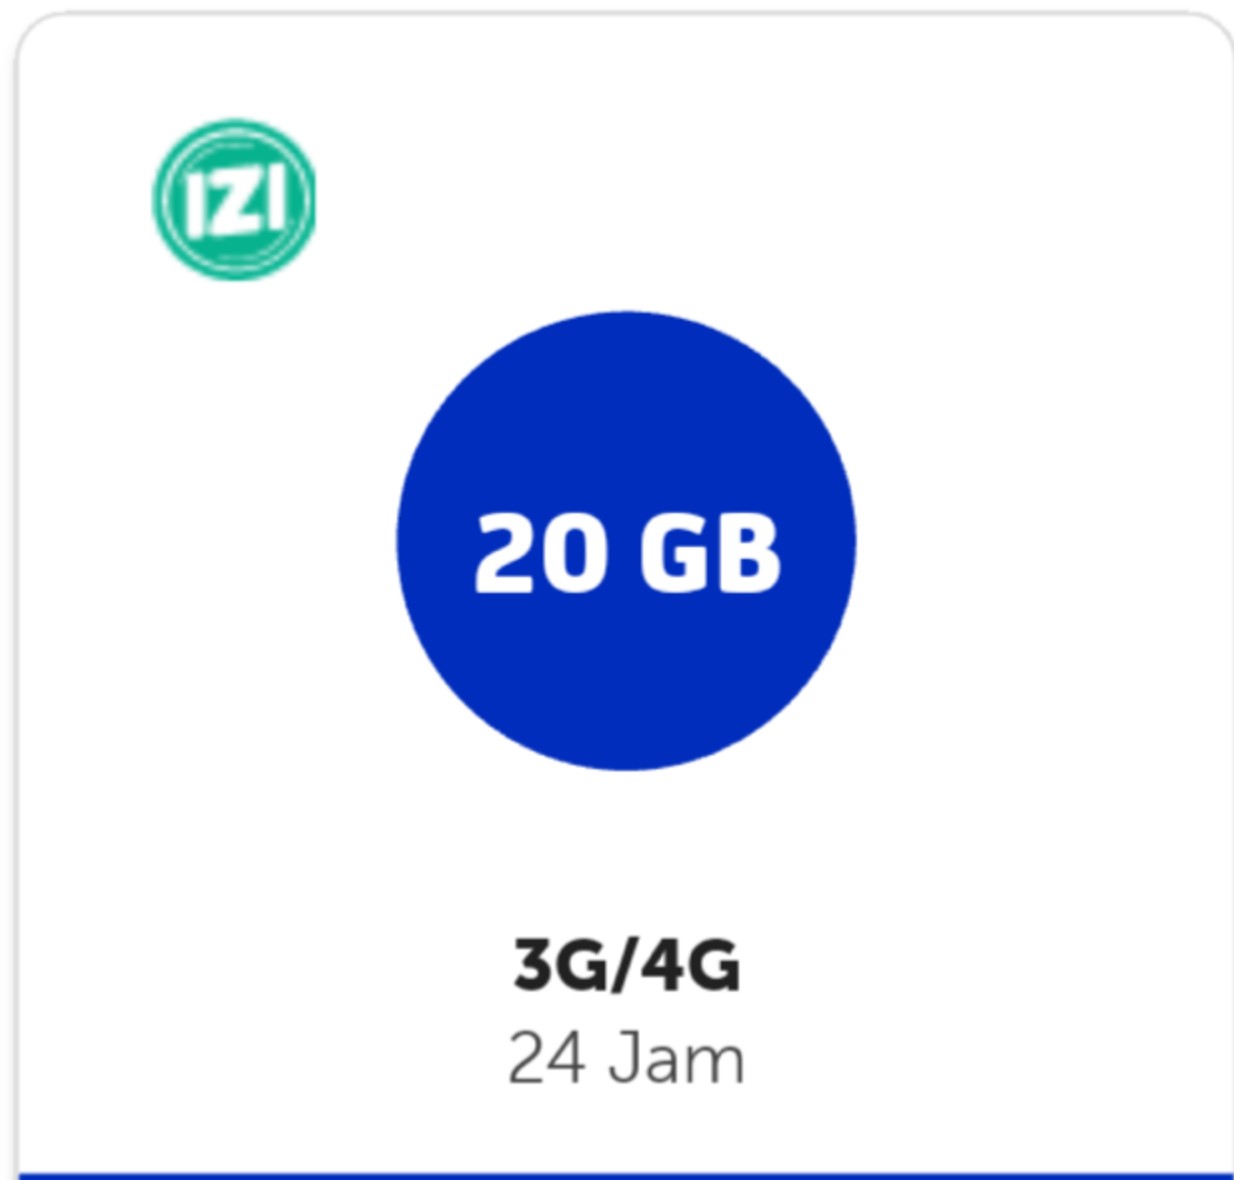 Kuota XL XL GO IZI Mifi Modem - XL GO IZI 20 GB